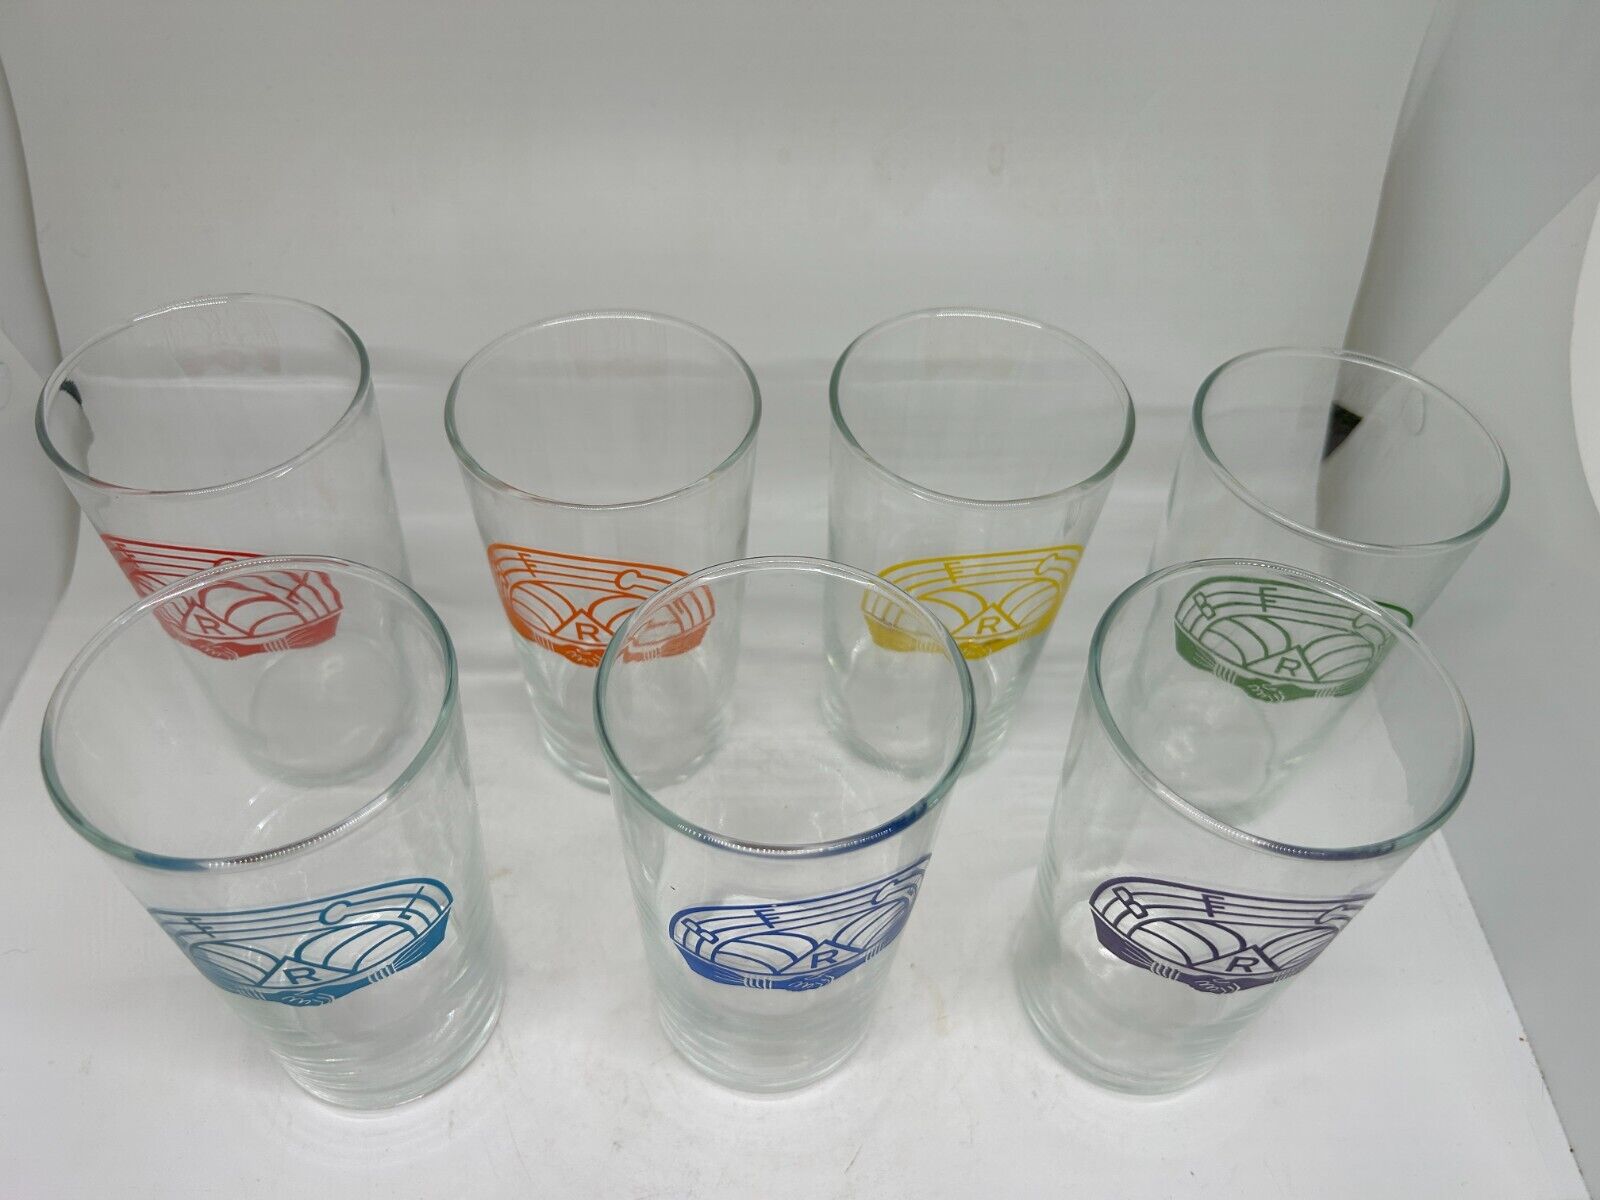 7 Drinking Glasses Tumblers with Rainbow Girls Emblem Masonic Vintage